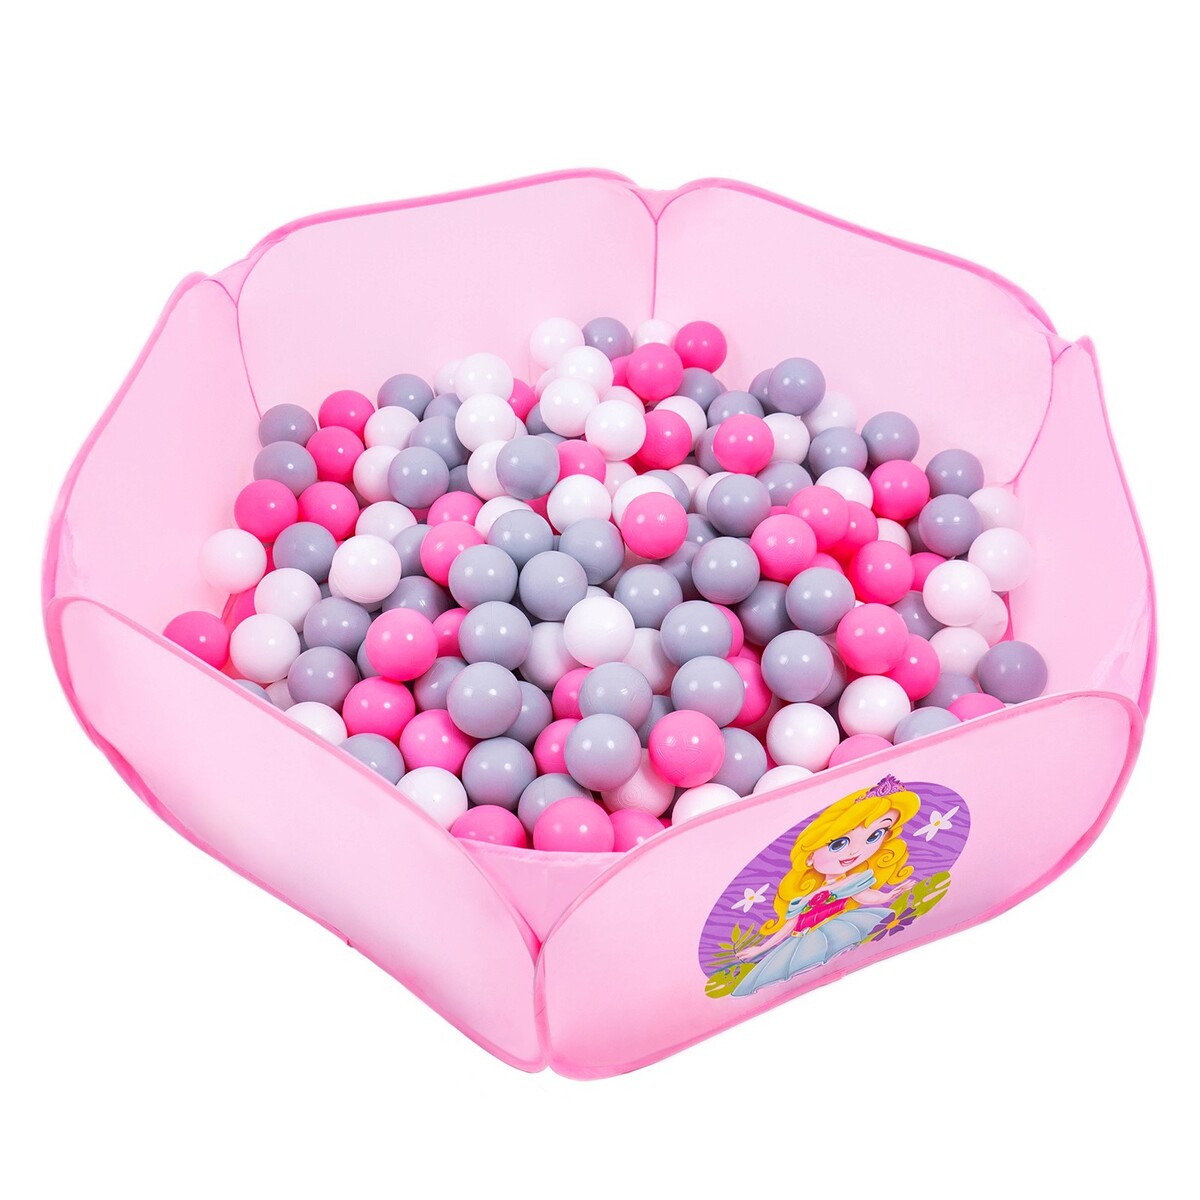 Шарики для сухого бассейна с рисунком, диаметр шара 7,5 см, набор 30 штук, цвет розовый, белый, серый шарики для сухого бассейна 30 штук диаметр 5 см